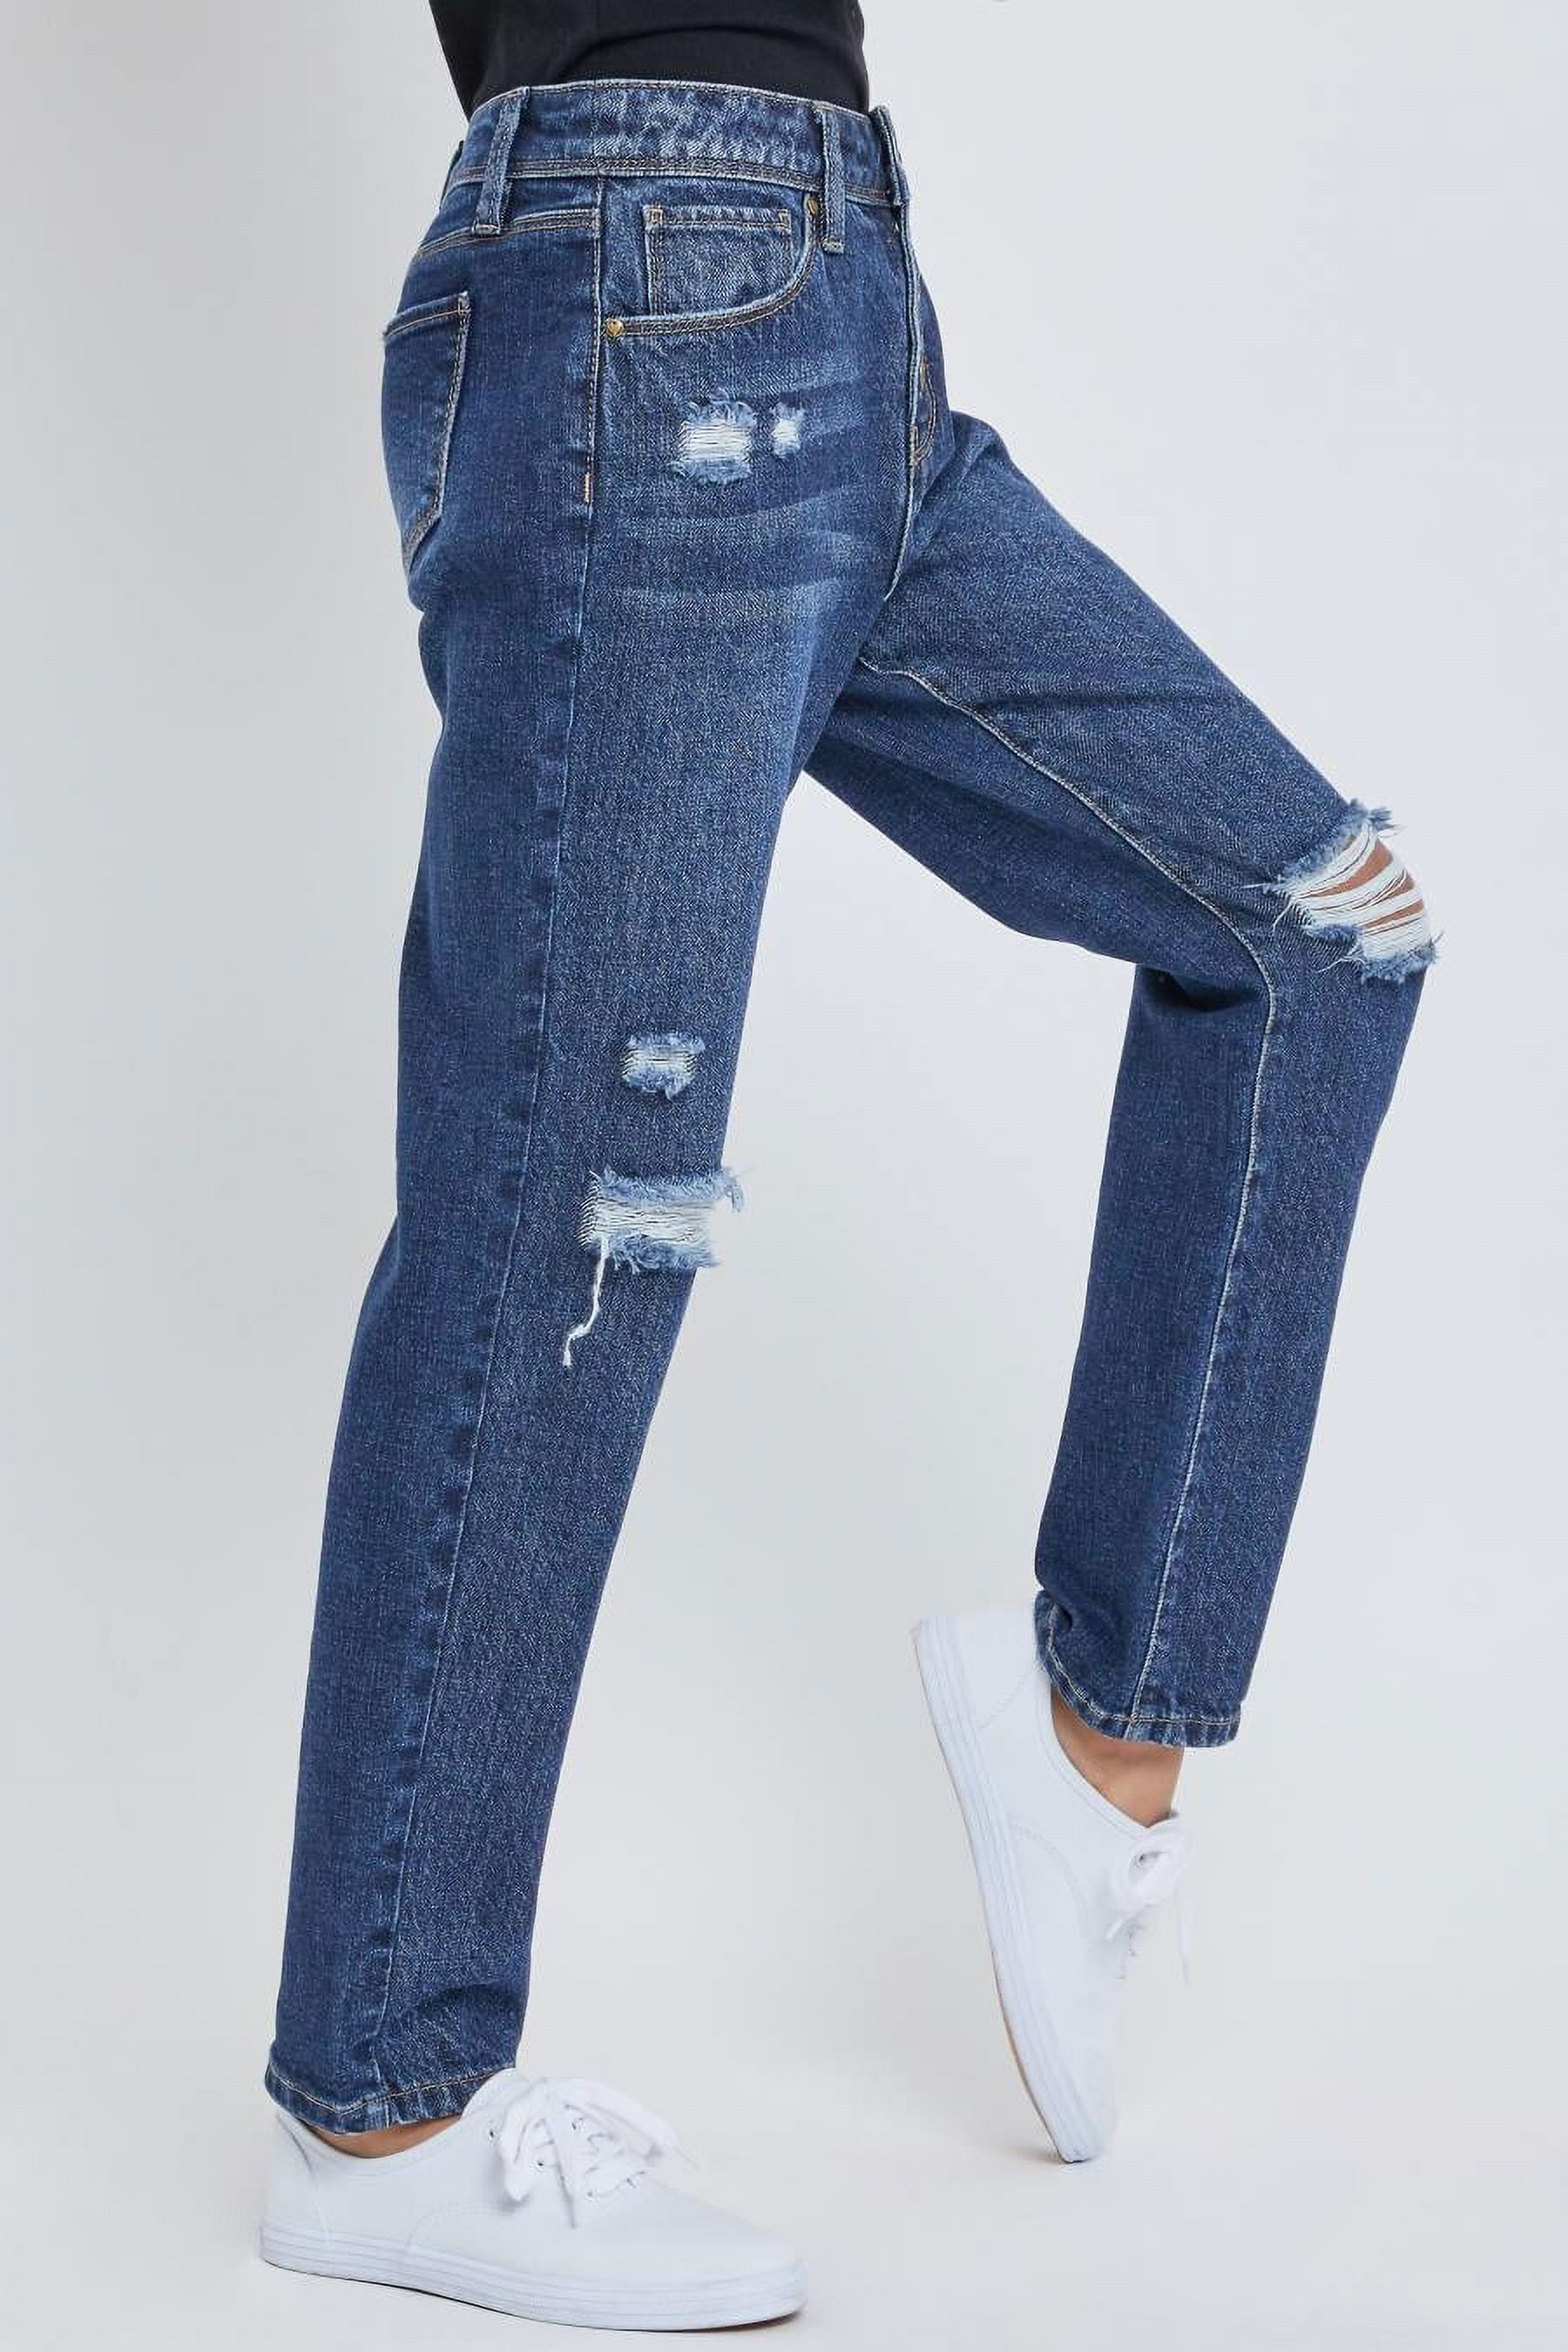 Sydney Sunrise High Rise Button Fly Distressed Skinny YMI Jeans (Mediu –  NanaMacs